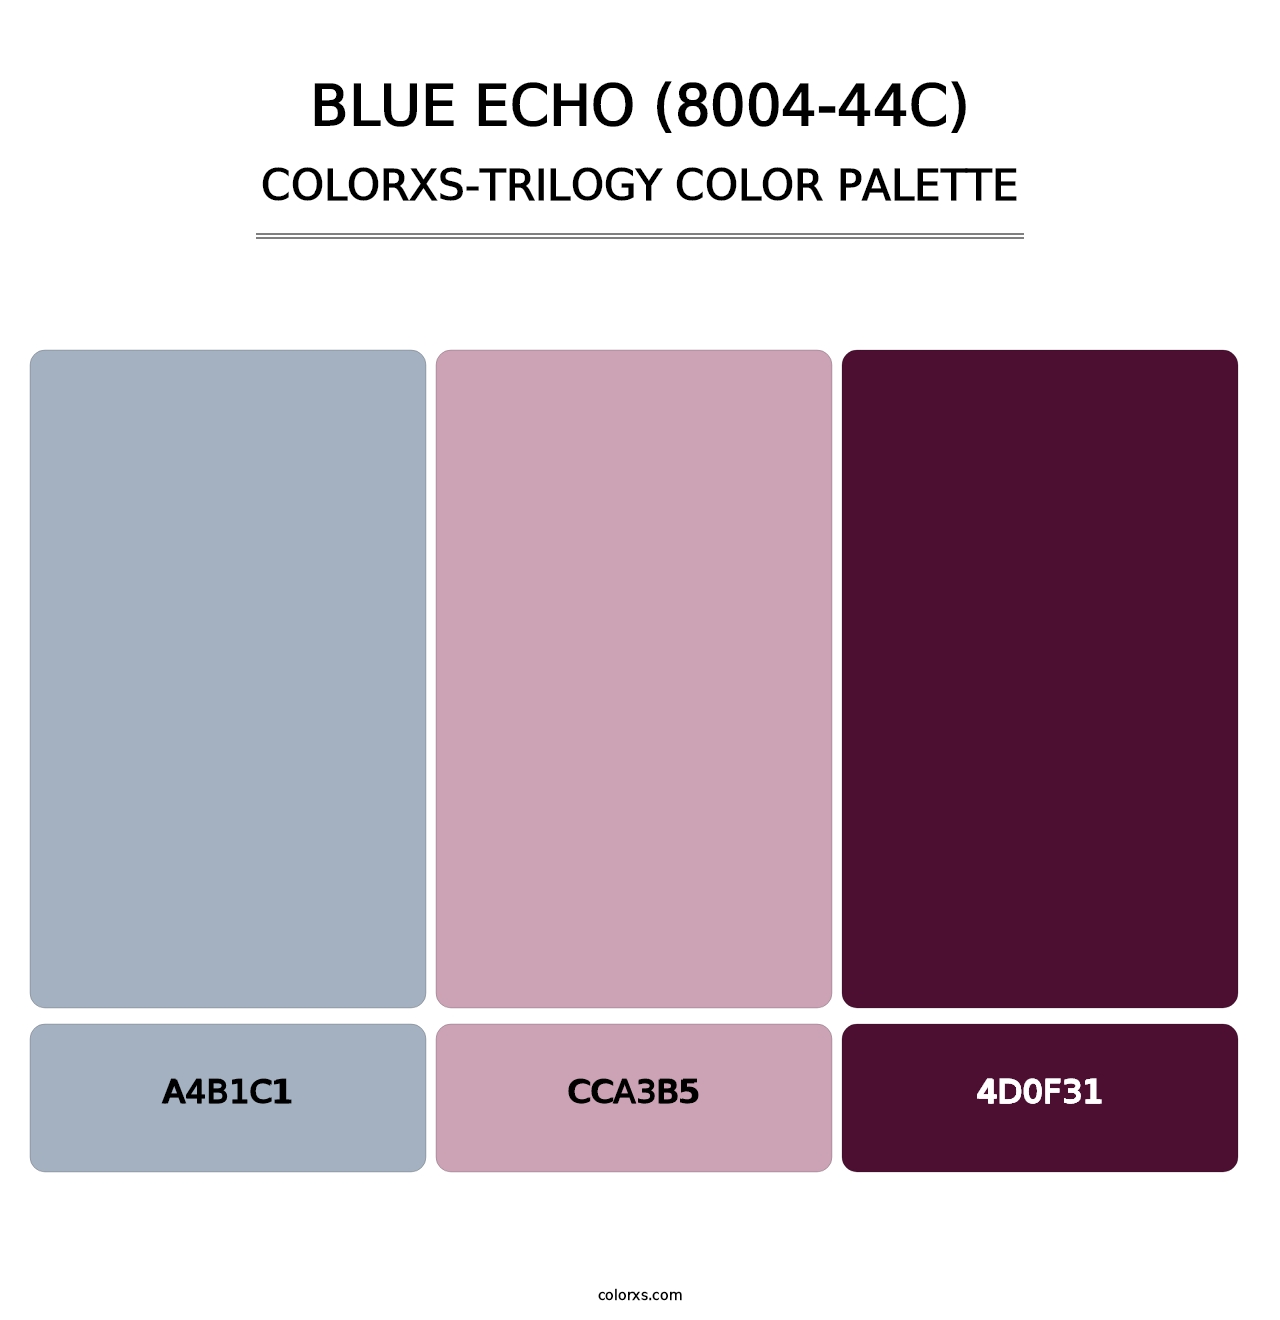 Blue Echo (8004-44C) - Colorxs Trilogy Palette